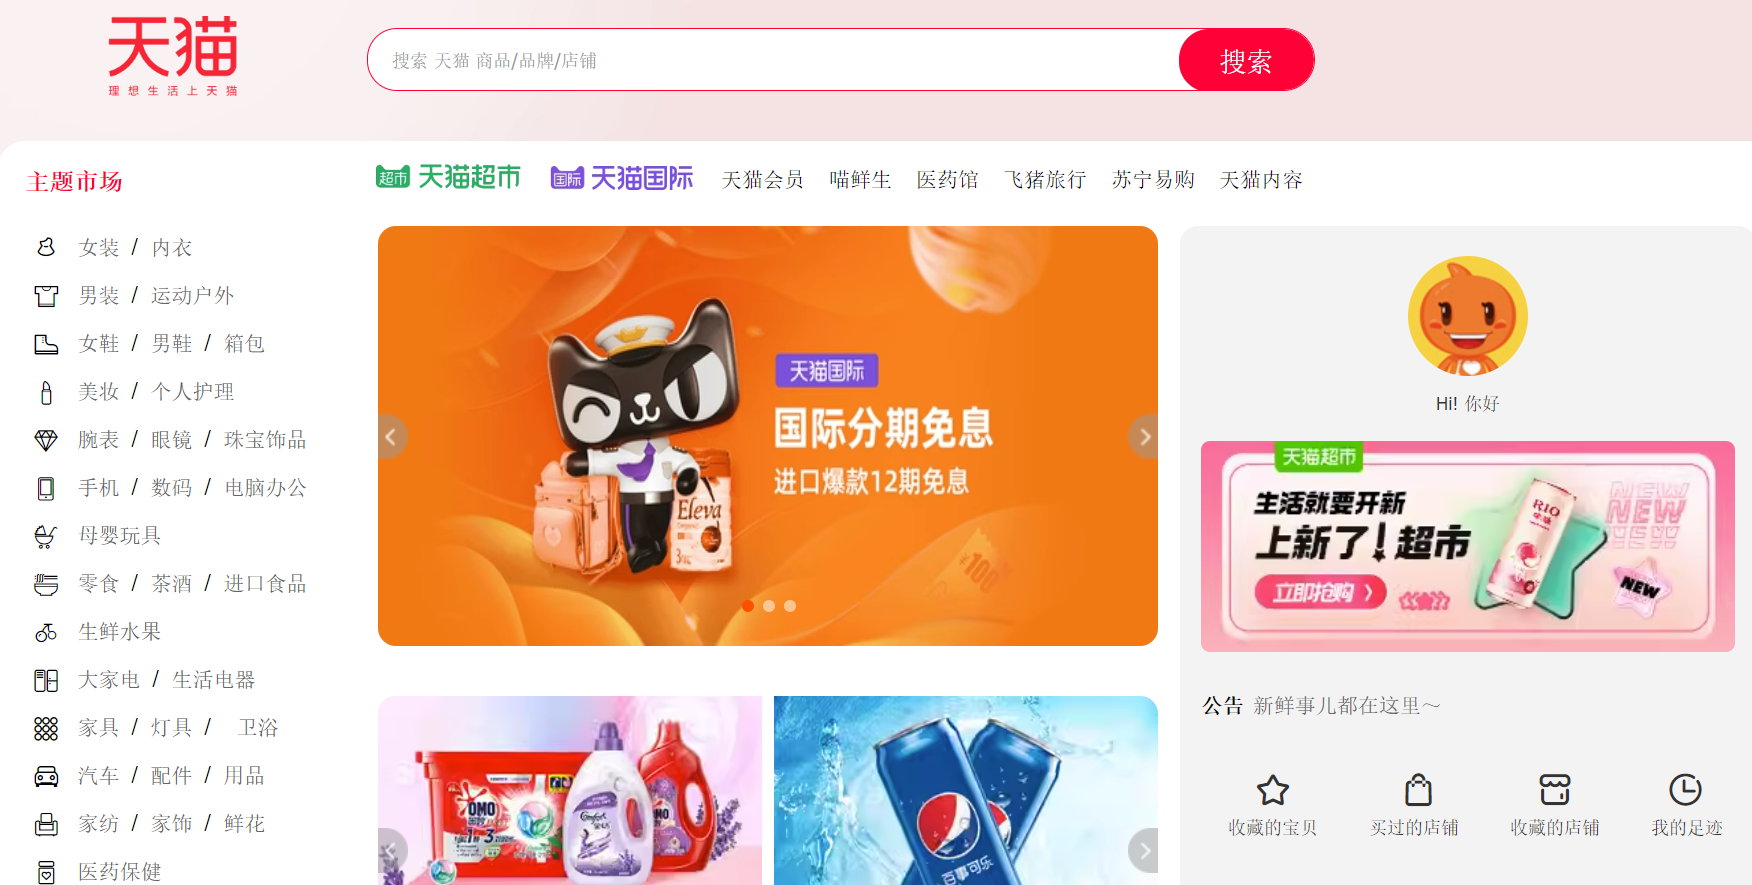 Tmall - ведущий в Китае B2C маркетплейс от компании Alibaba Group